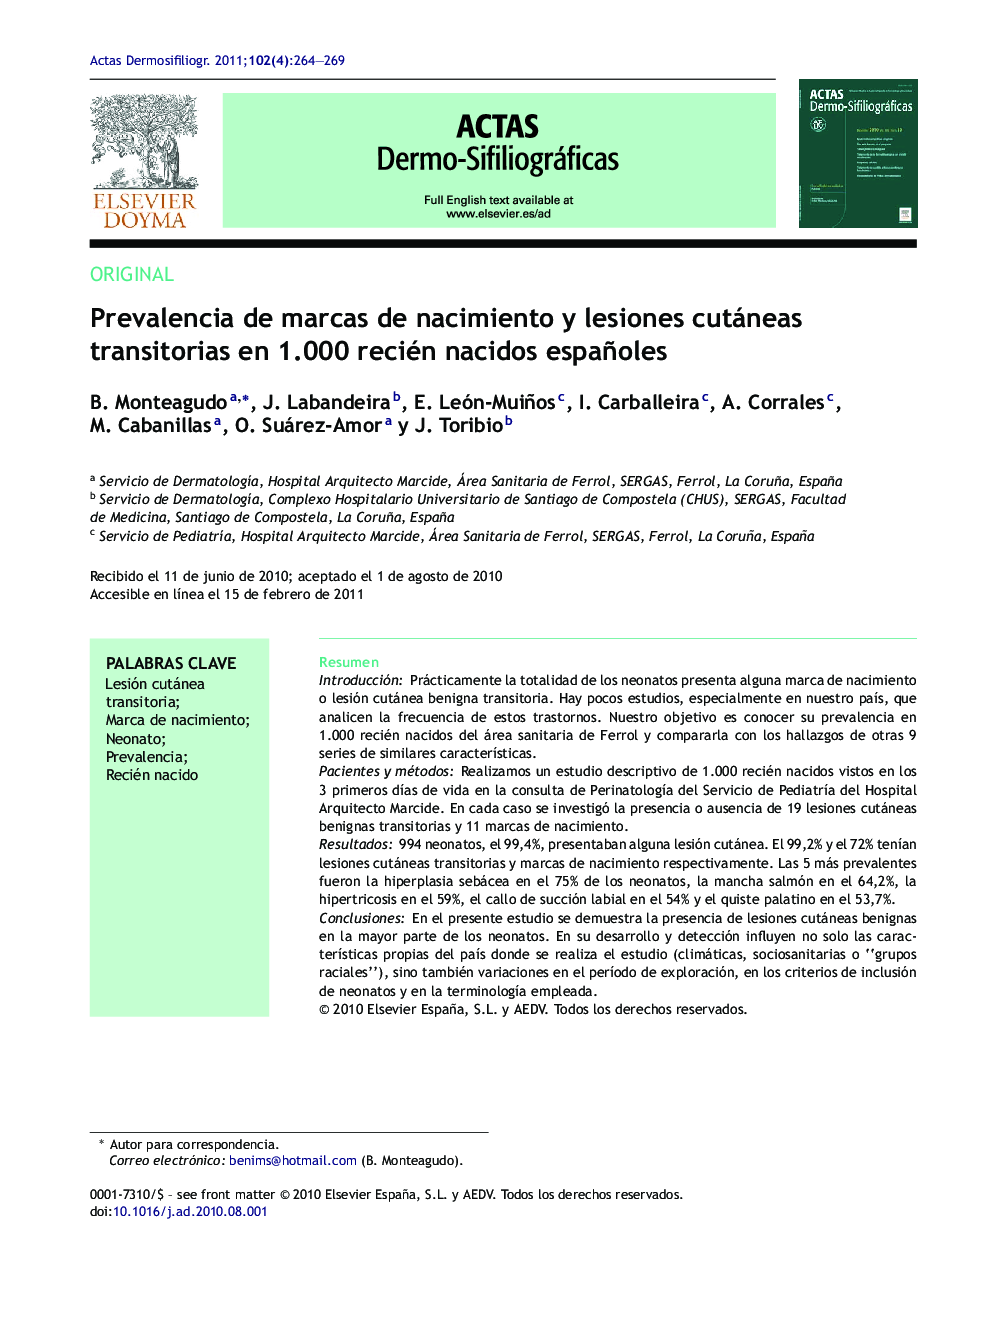 Prevalencia de marcas de nacimiento y lesiones cutáneas transitorias en 1.000 recién nacidos españoles